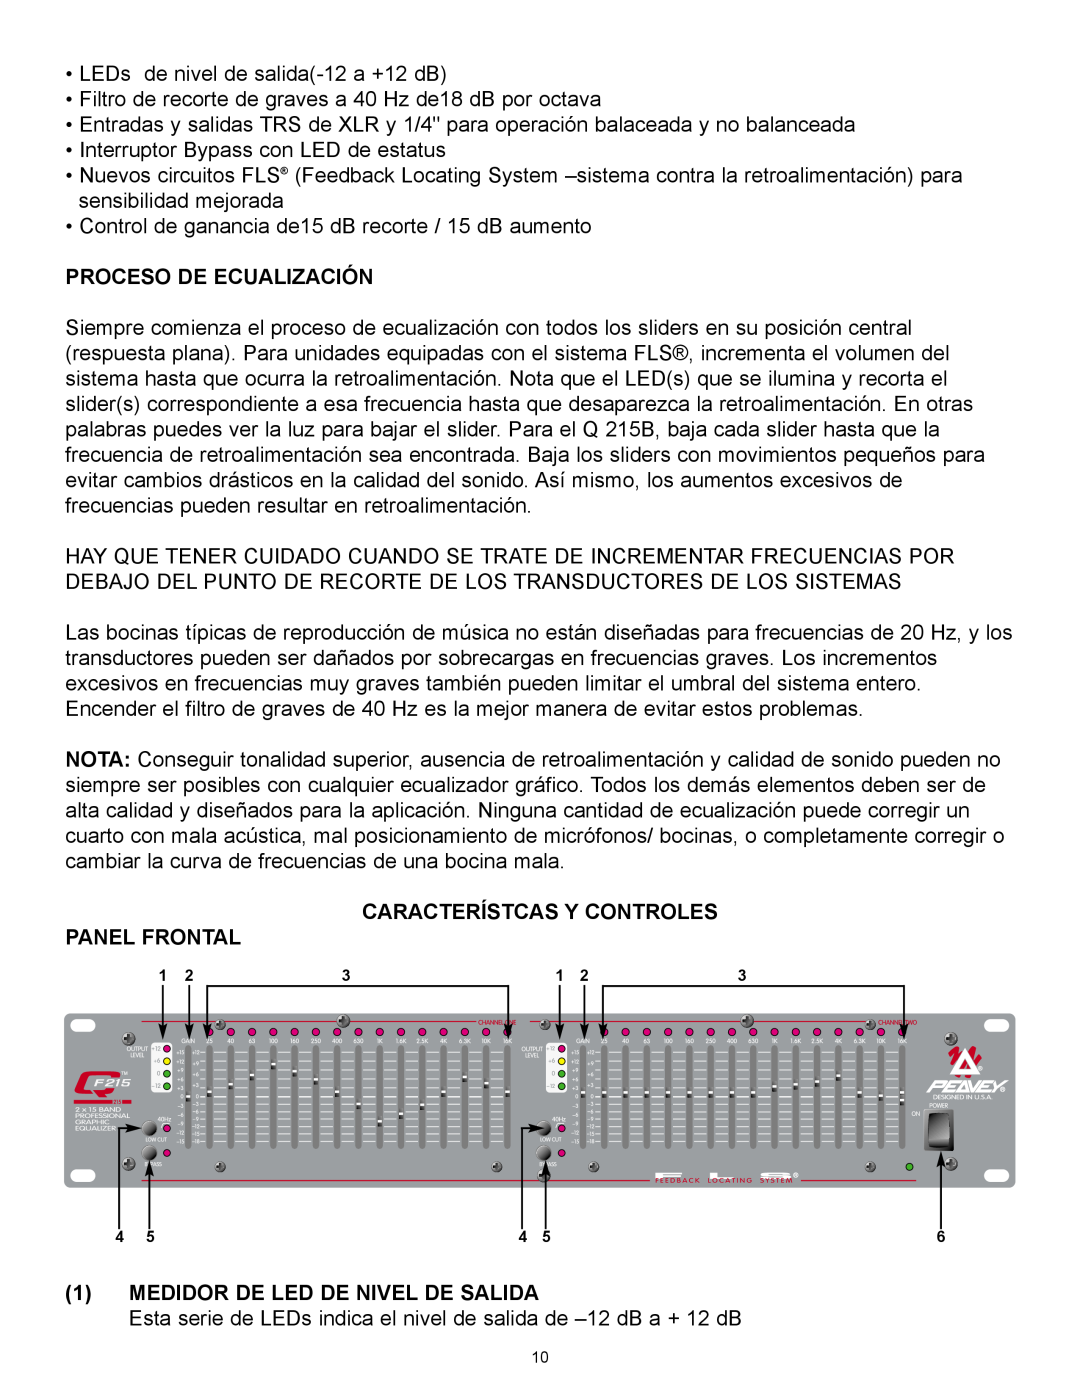 Peavey QF131, QF215 Proceso De Ecualización, Característcas Y Controles Panel Frontal, 1MEDIDOR DE LED DE NIVEL DE SALIDA 